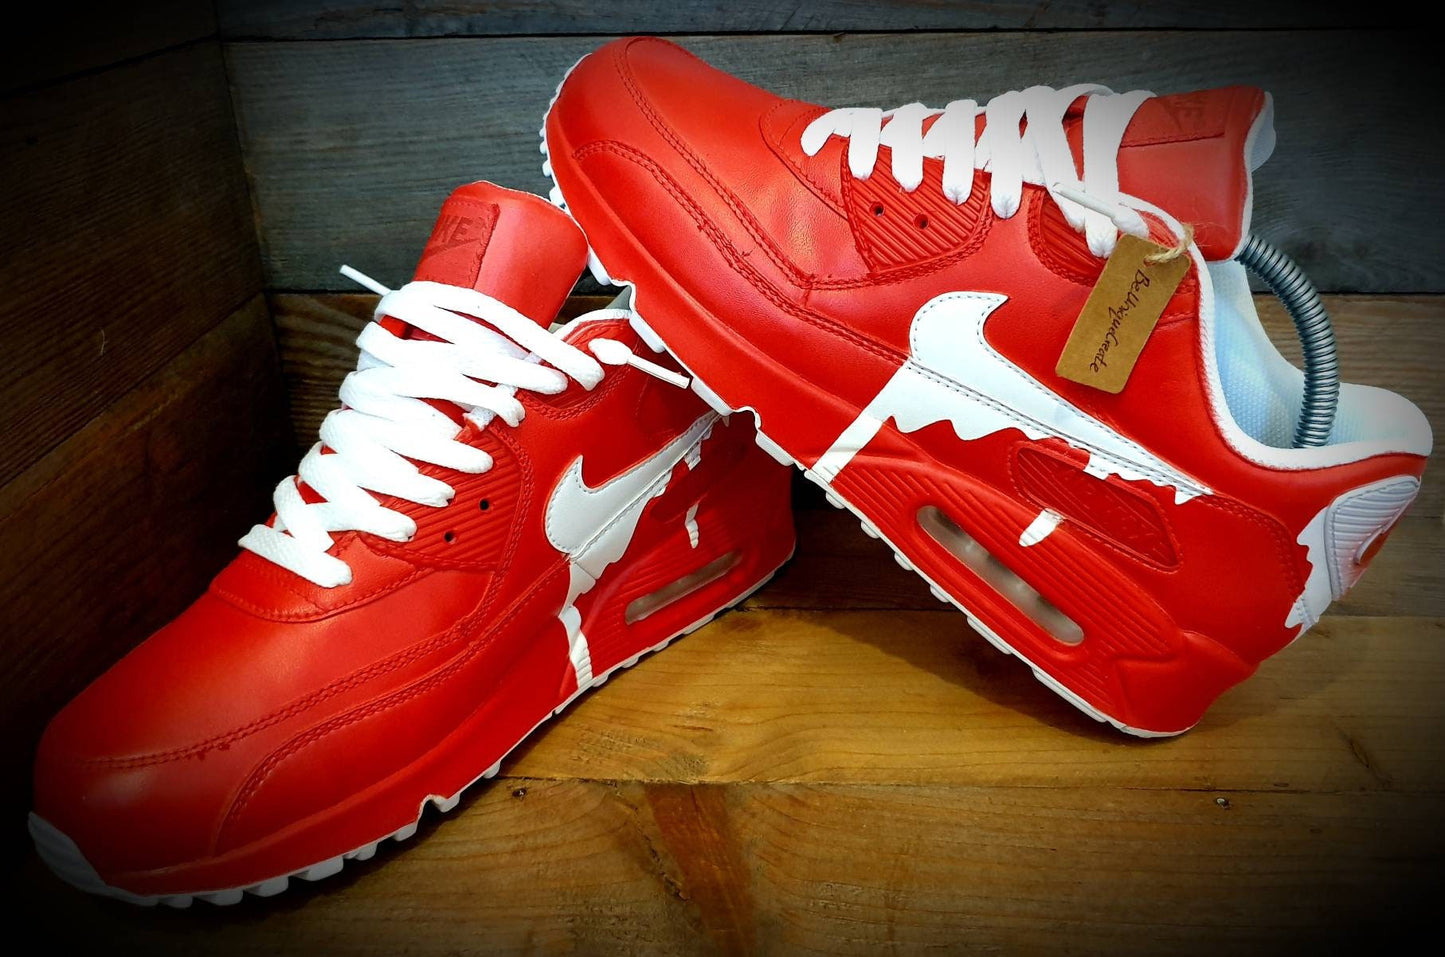 Custom Painted Air Max 90/Sneakers/Shoes/Kicks/Premium/Personalised/Classic Drip-Red